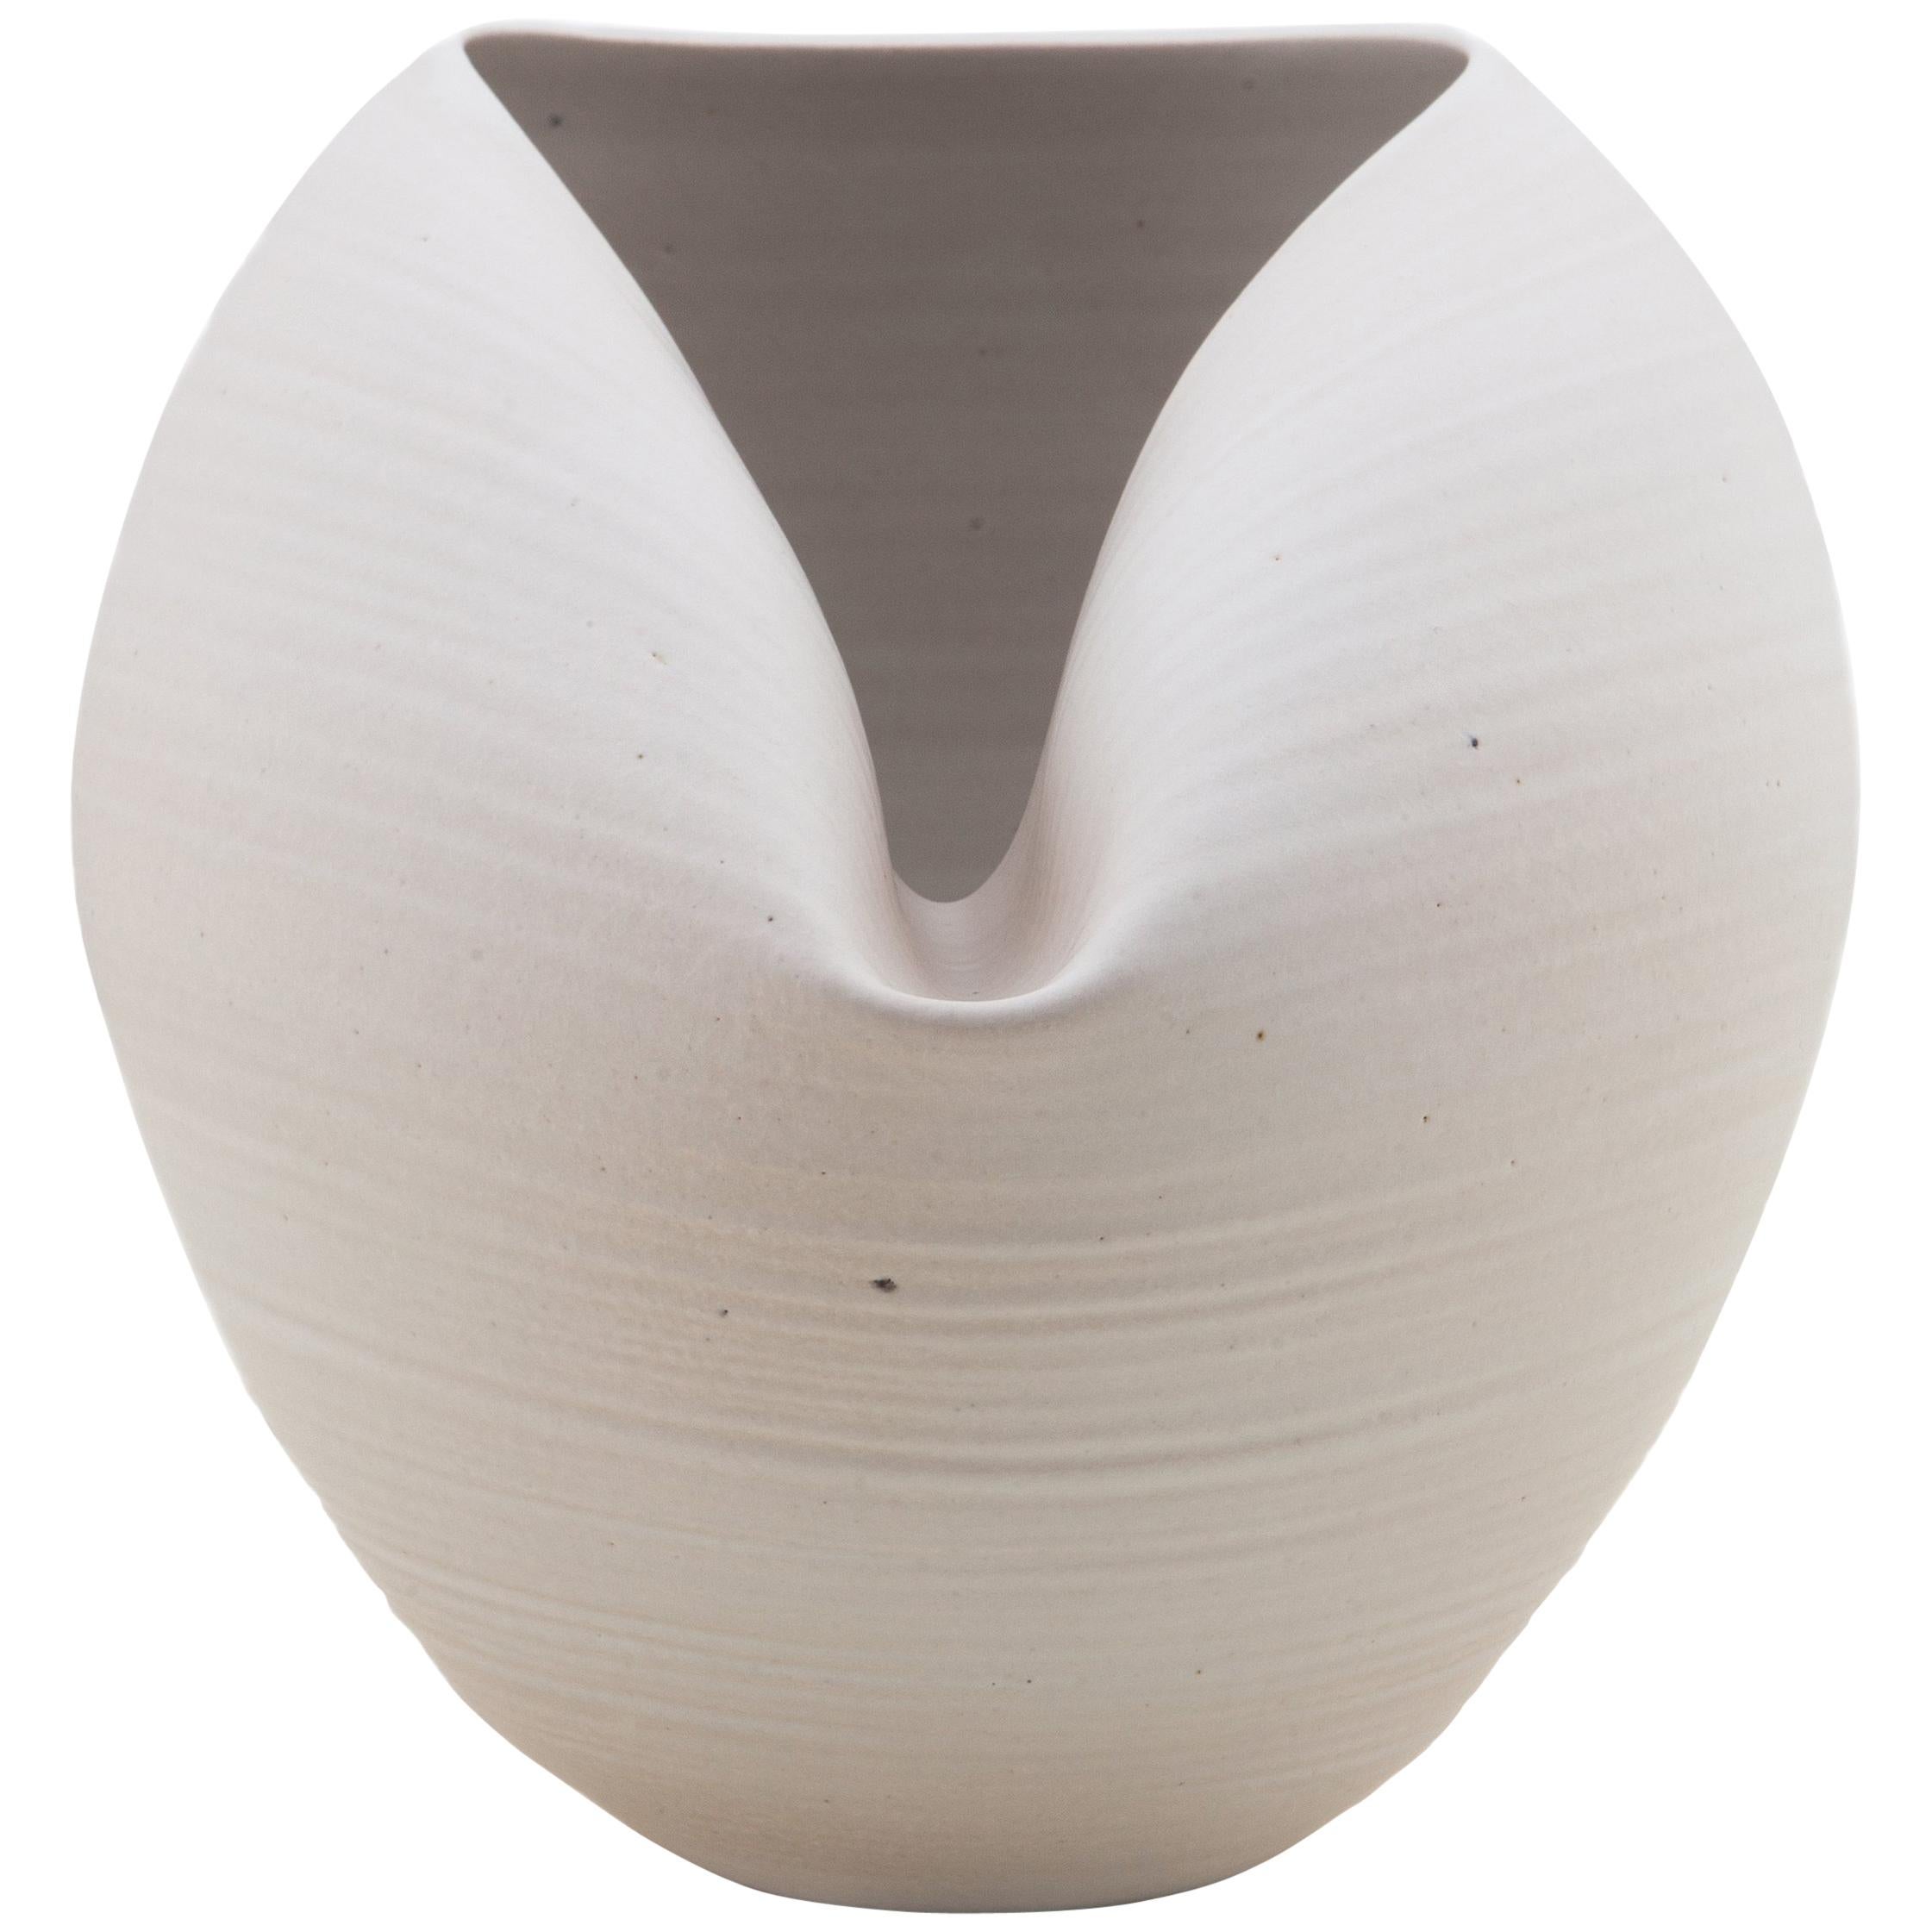 White Oval Form, Vase, Interior Sculpture or Vessel, Objet D'Art